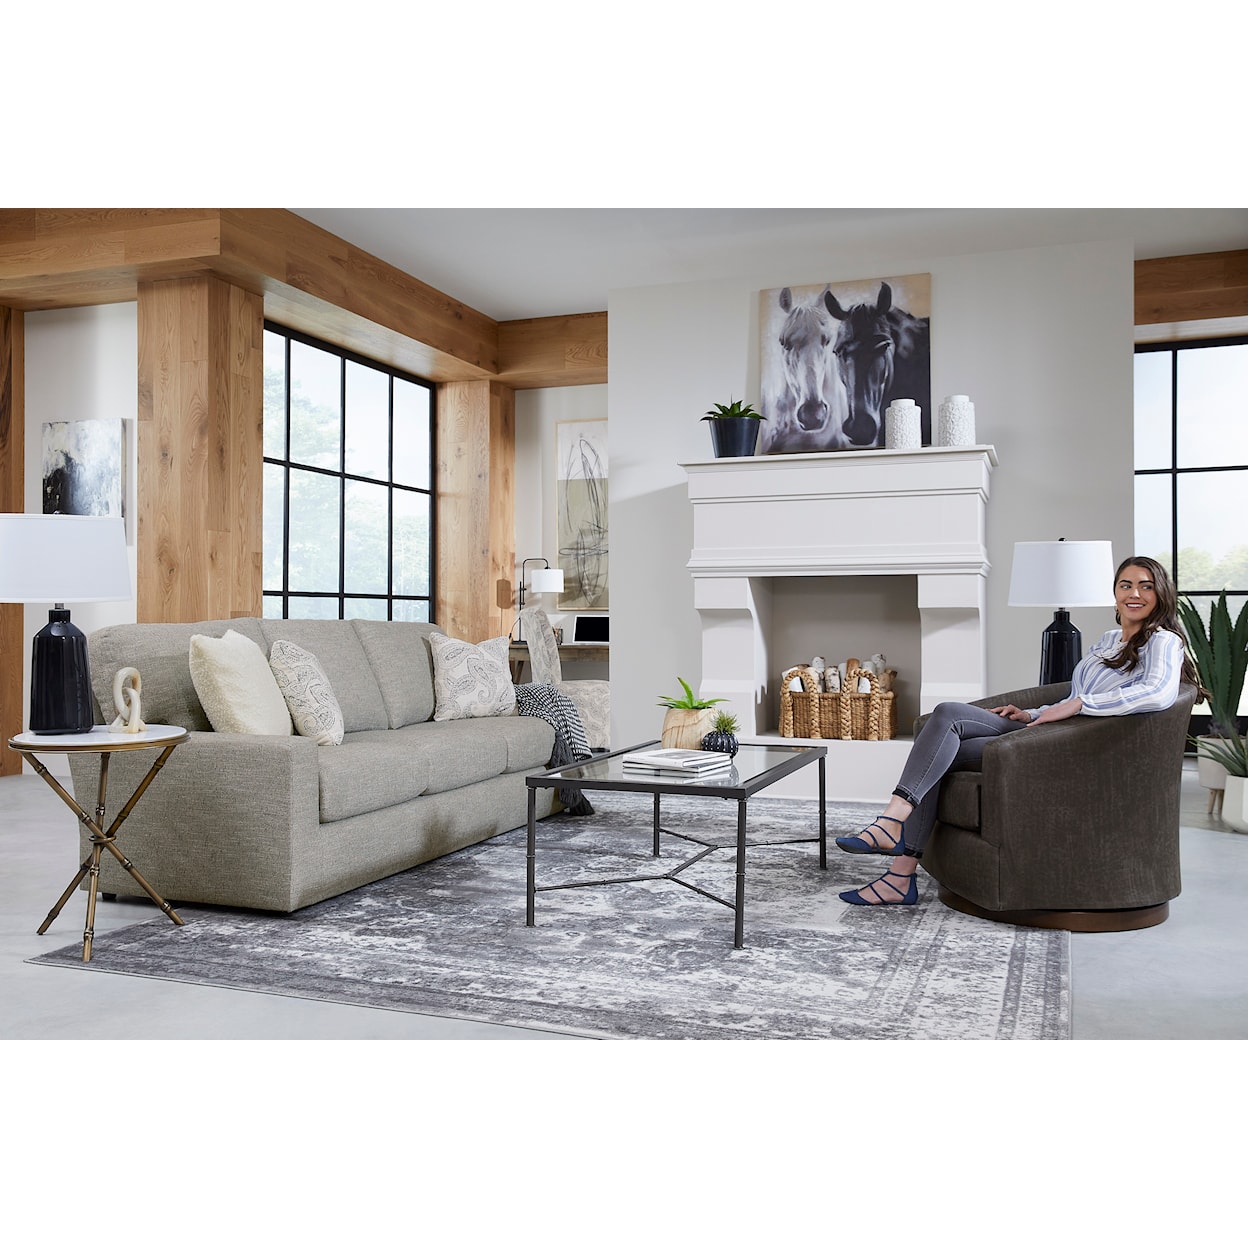 Best Home Furnishings Dovely Sofa